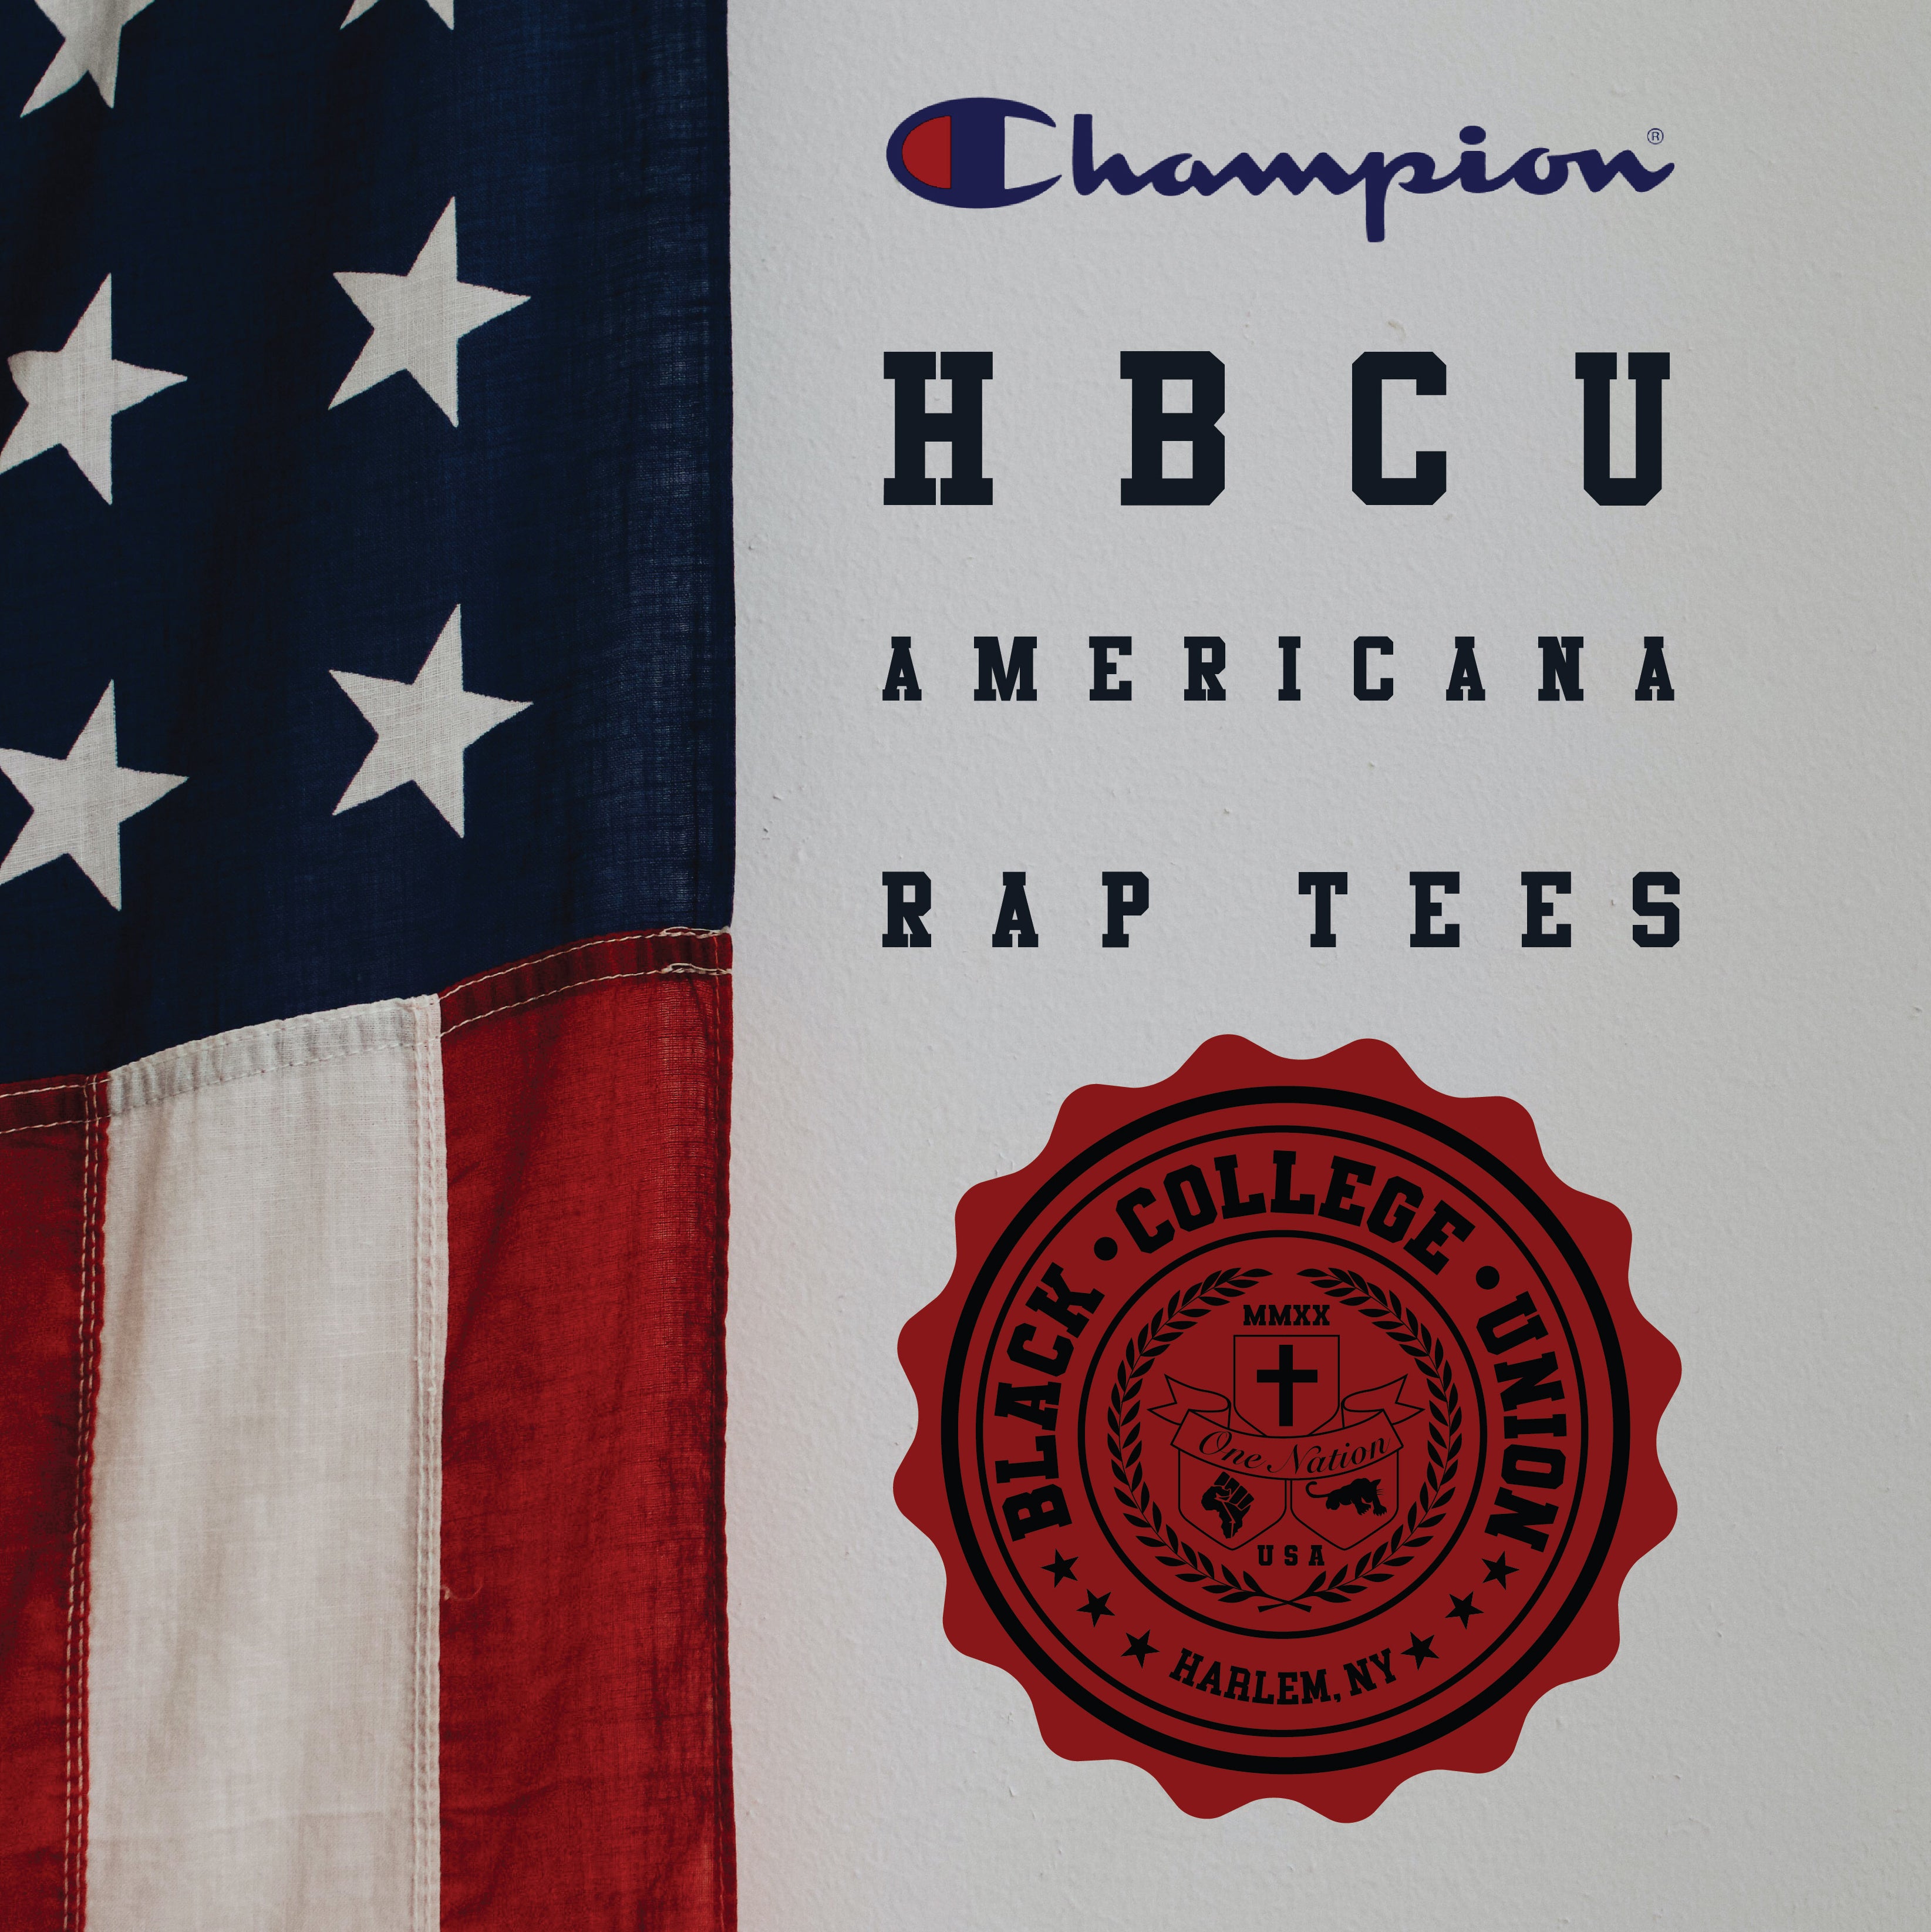 BCU X Champion Original HBCU Americana Rap Tee - North Carolina A&T [NCAT]